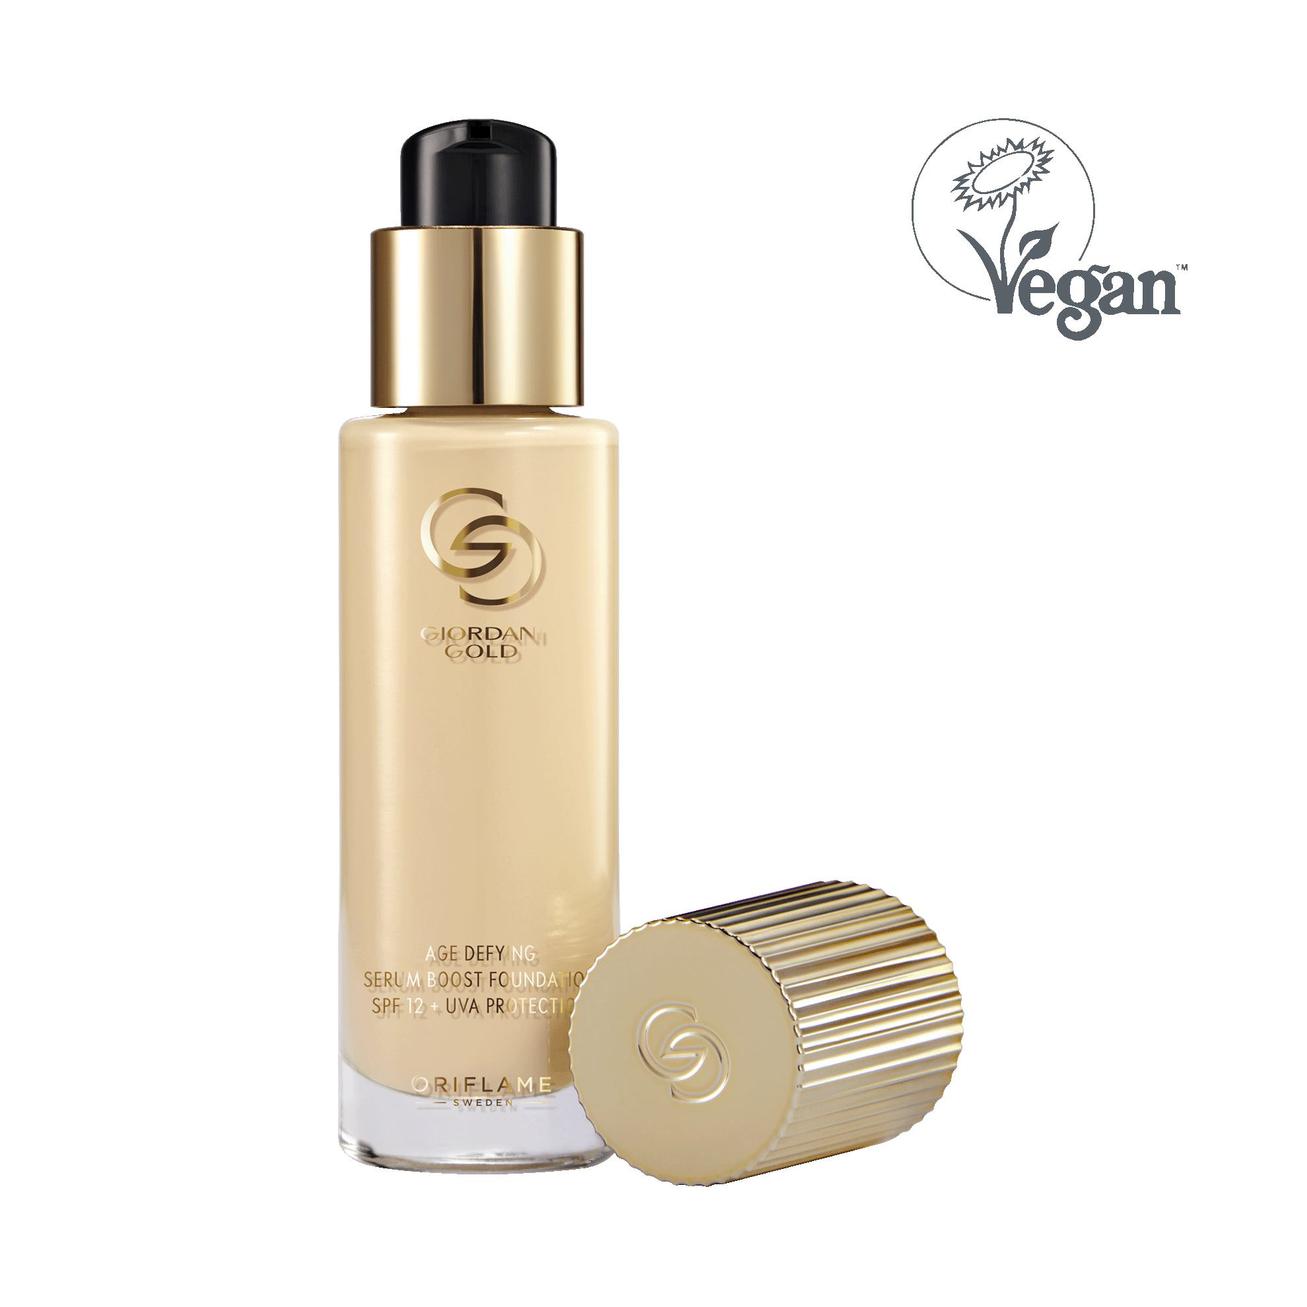 Oferta de Maquillaje Antienvejecimiento Serum Boost SPF 12 + Protección UVA Giordani Gold por 24,99€ en Oriflame